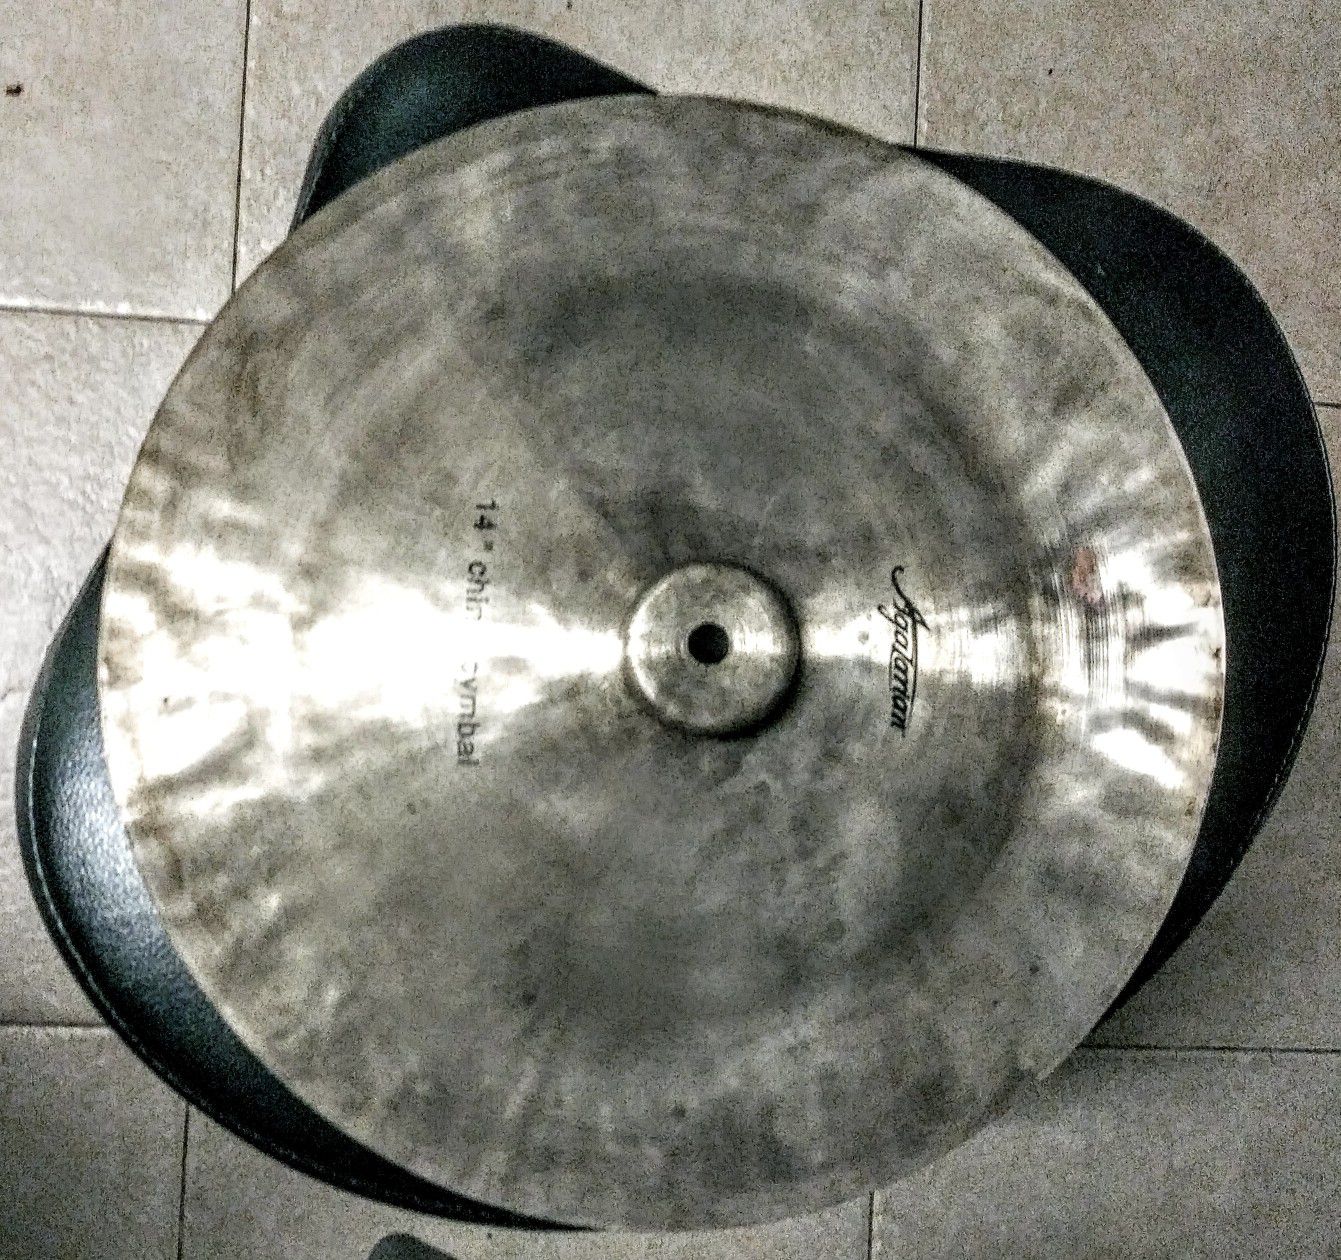 Agazarian 14" China Cymbal